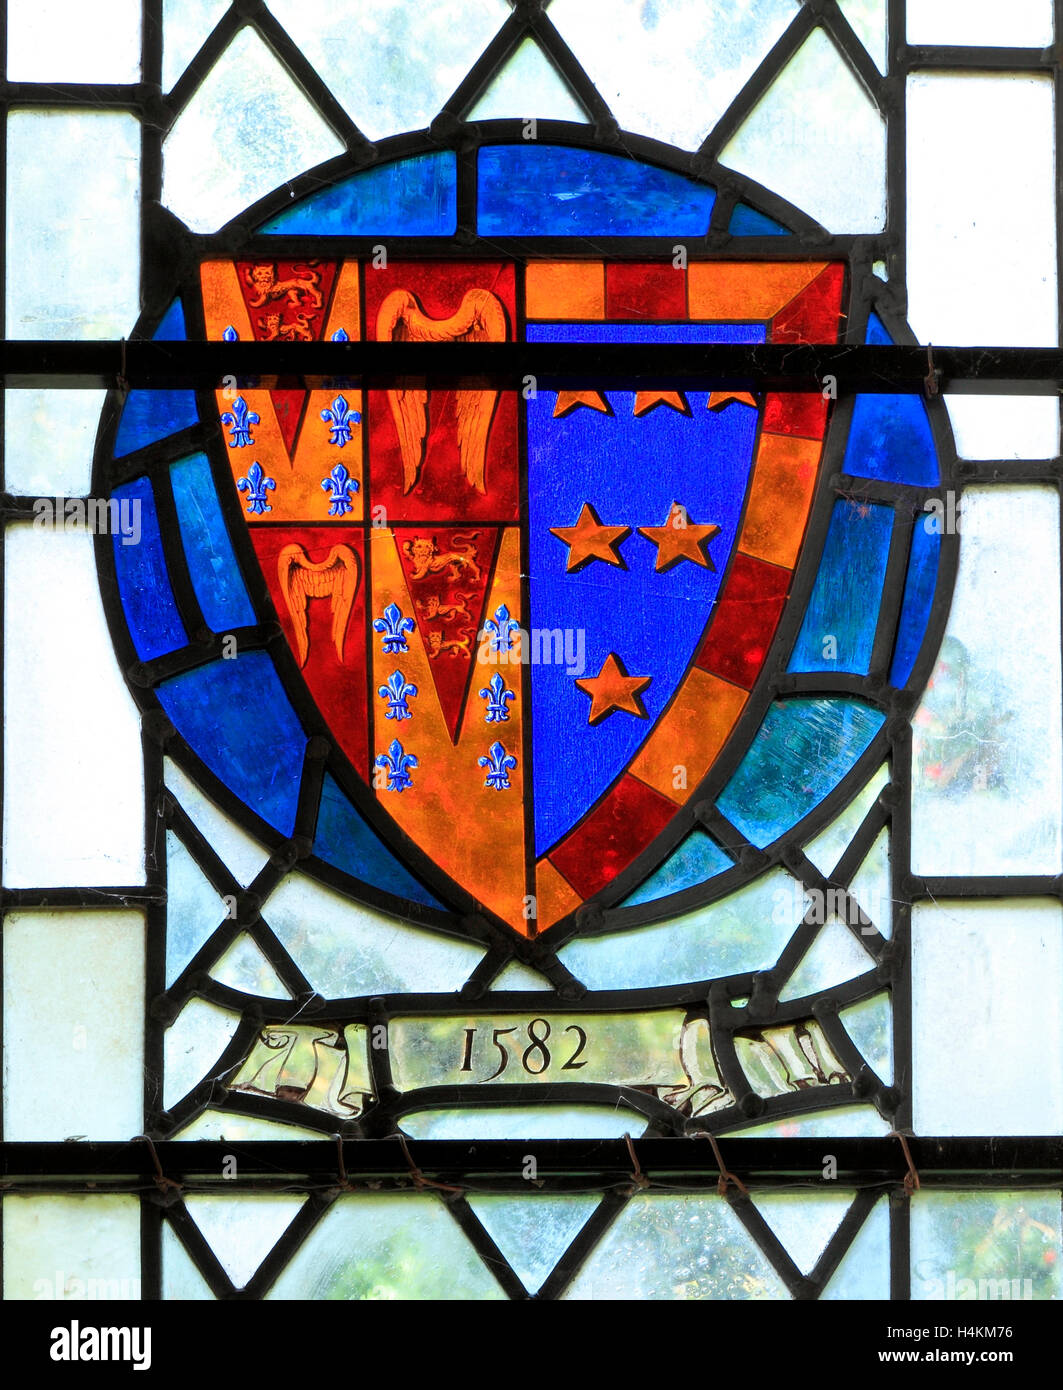 Stanhoe, Norfolk, aux bras d'Edward Seymour de Berry Pomeroy, Devon, 1582, le vitrail héraldique héraldique, fenêtre cocarde shield Banque D'Images